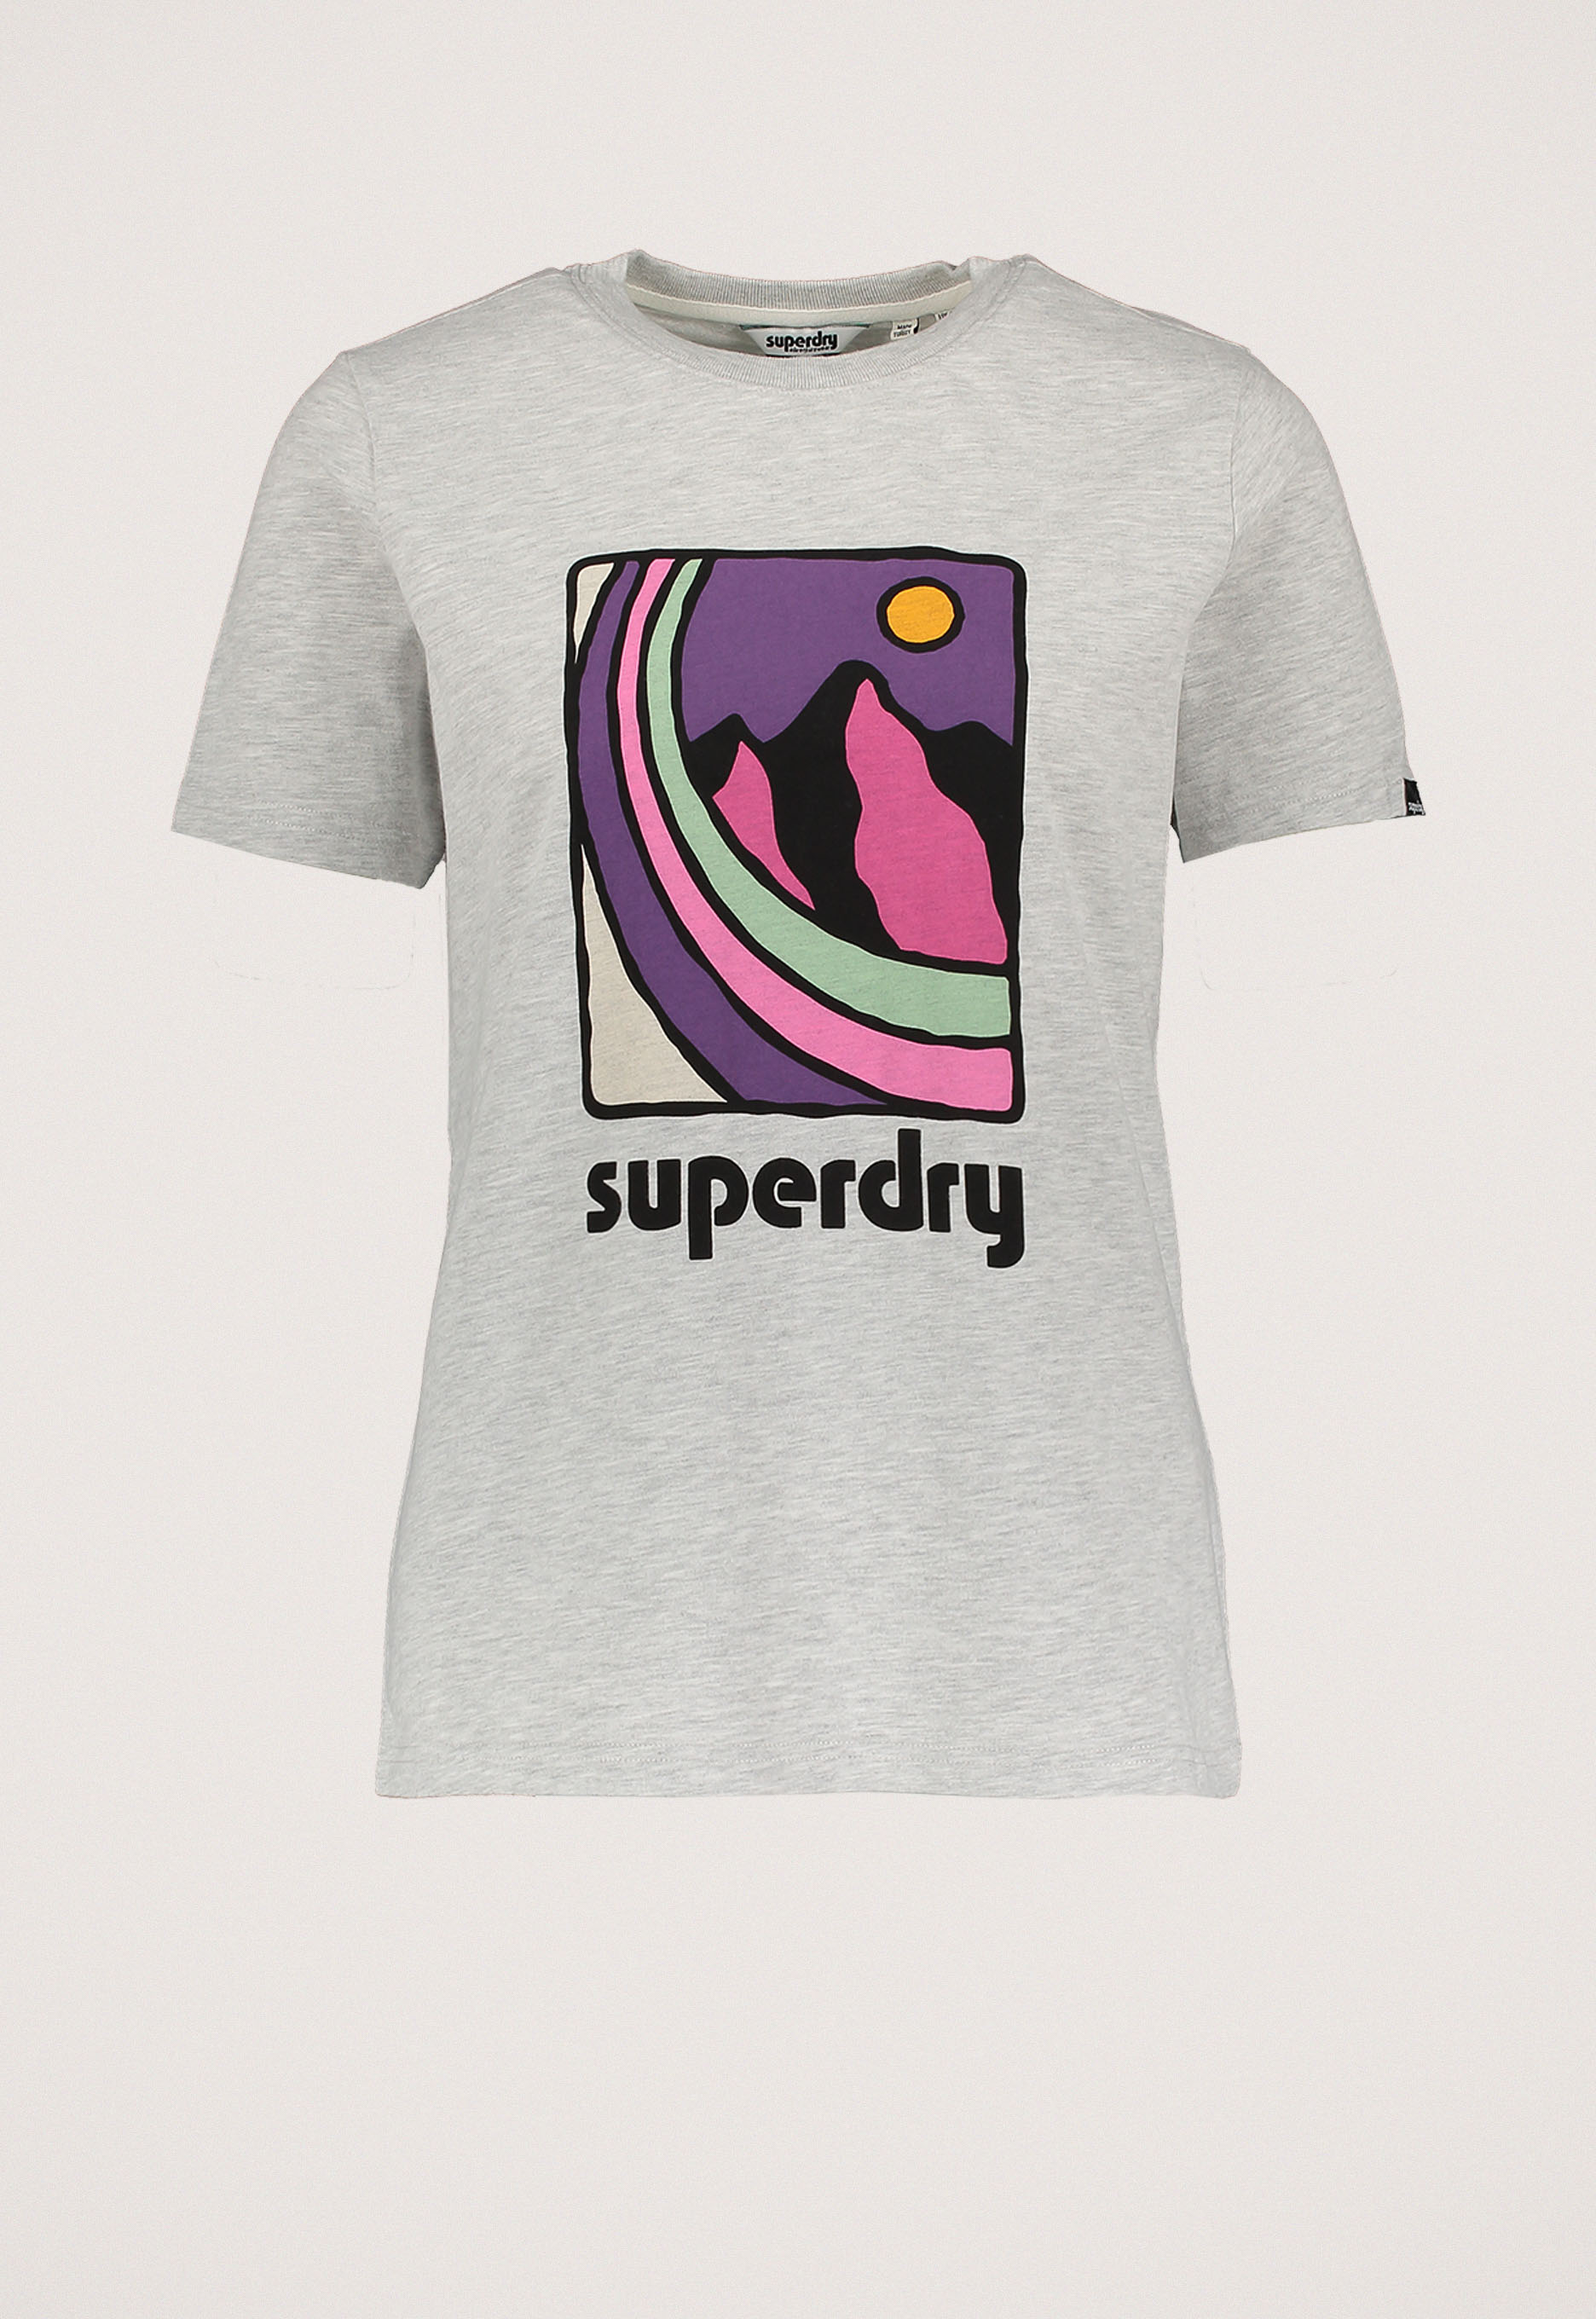 Superdry Vintage 90s Terrain T-shirt